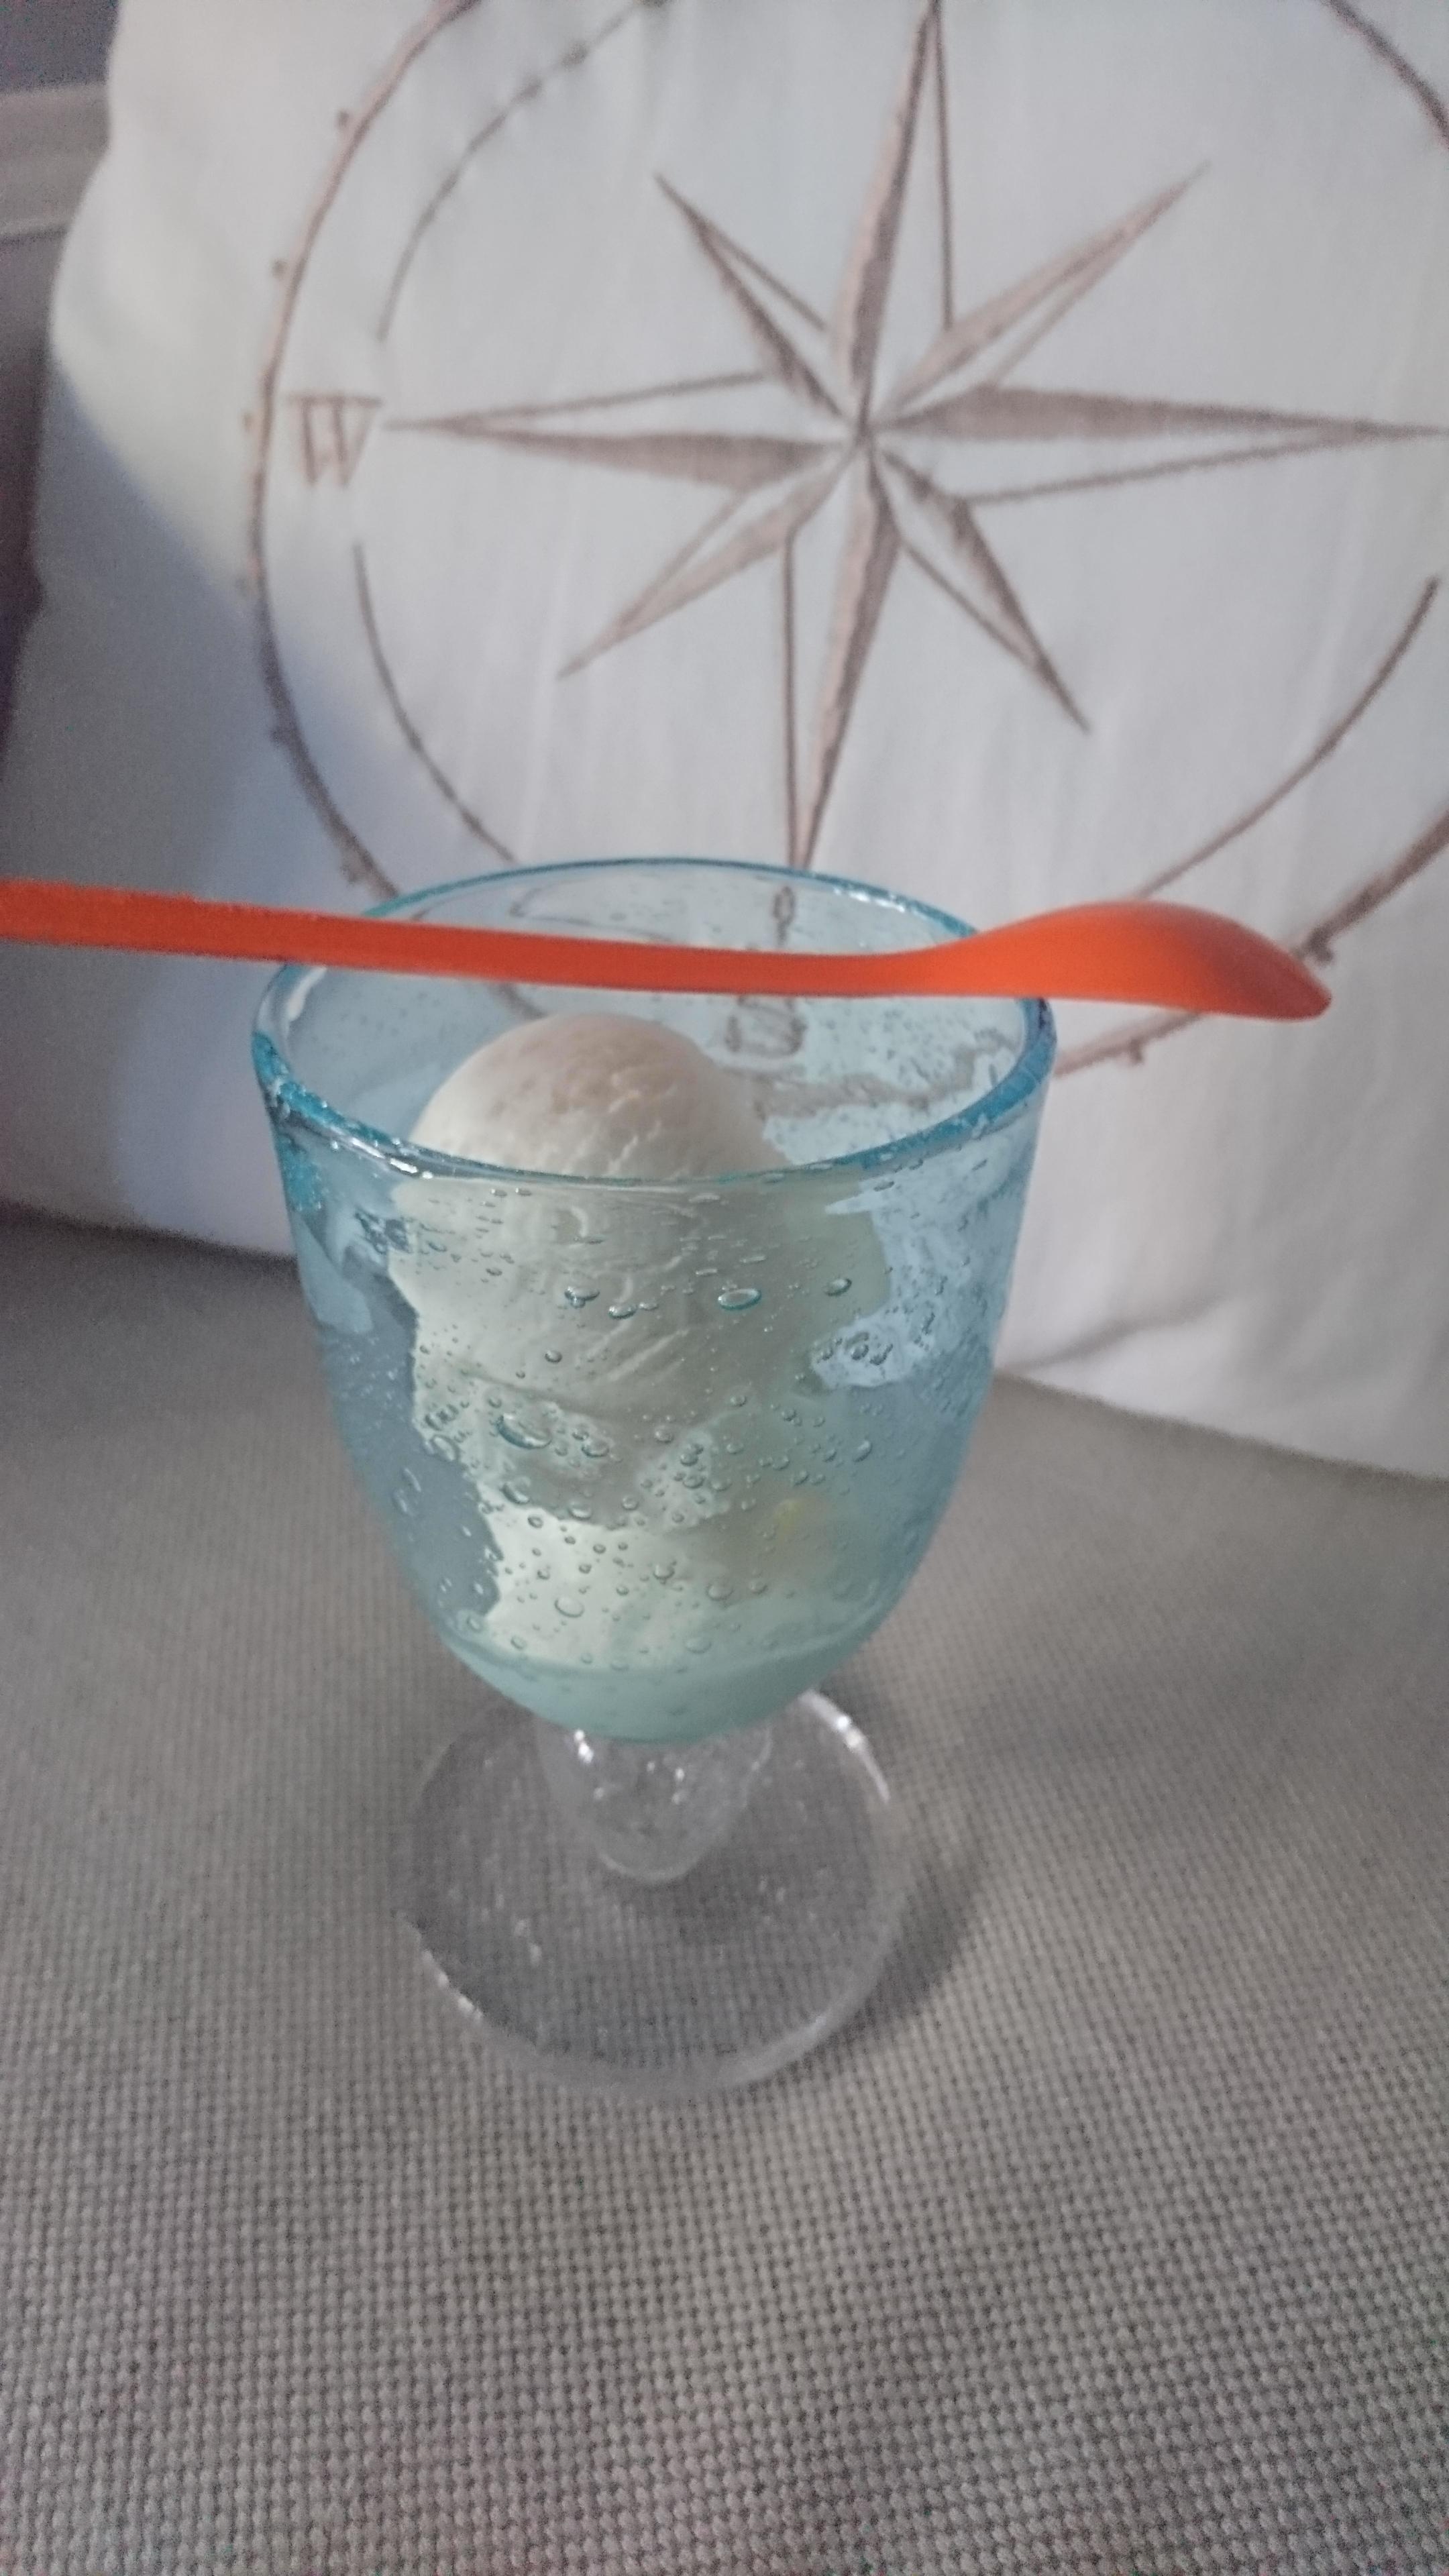 Frozen Yogurt im Lieblingsglas 🧡

#Sommer #Glas #Icecream
#rice #eis